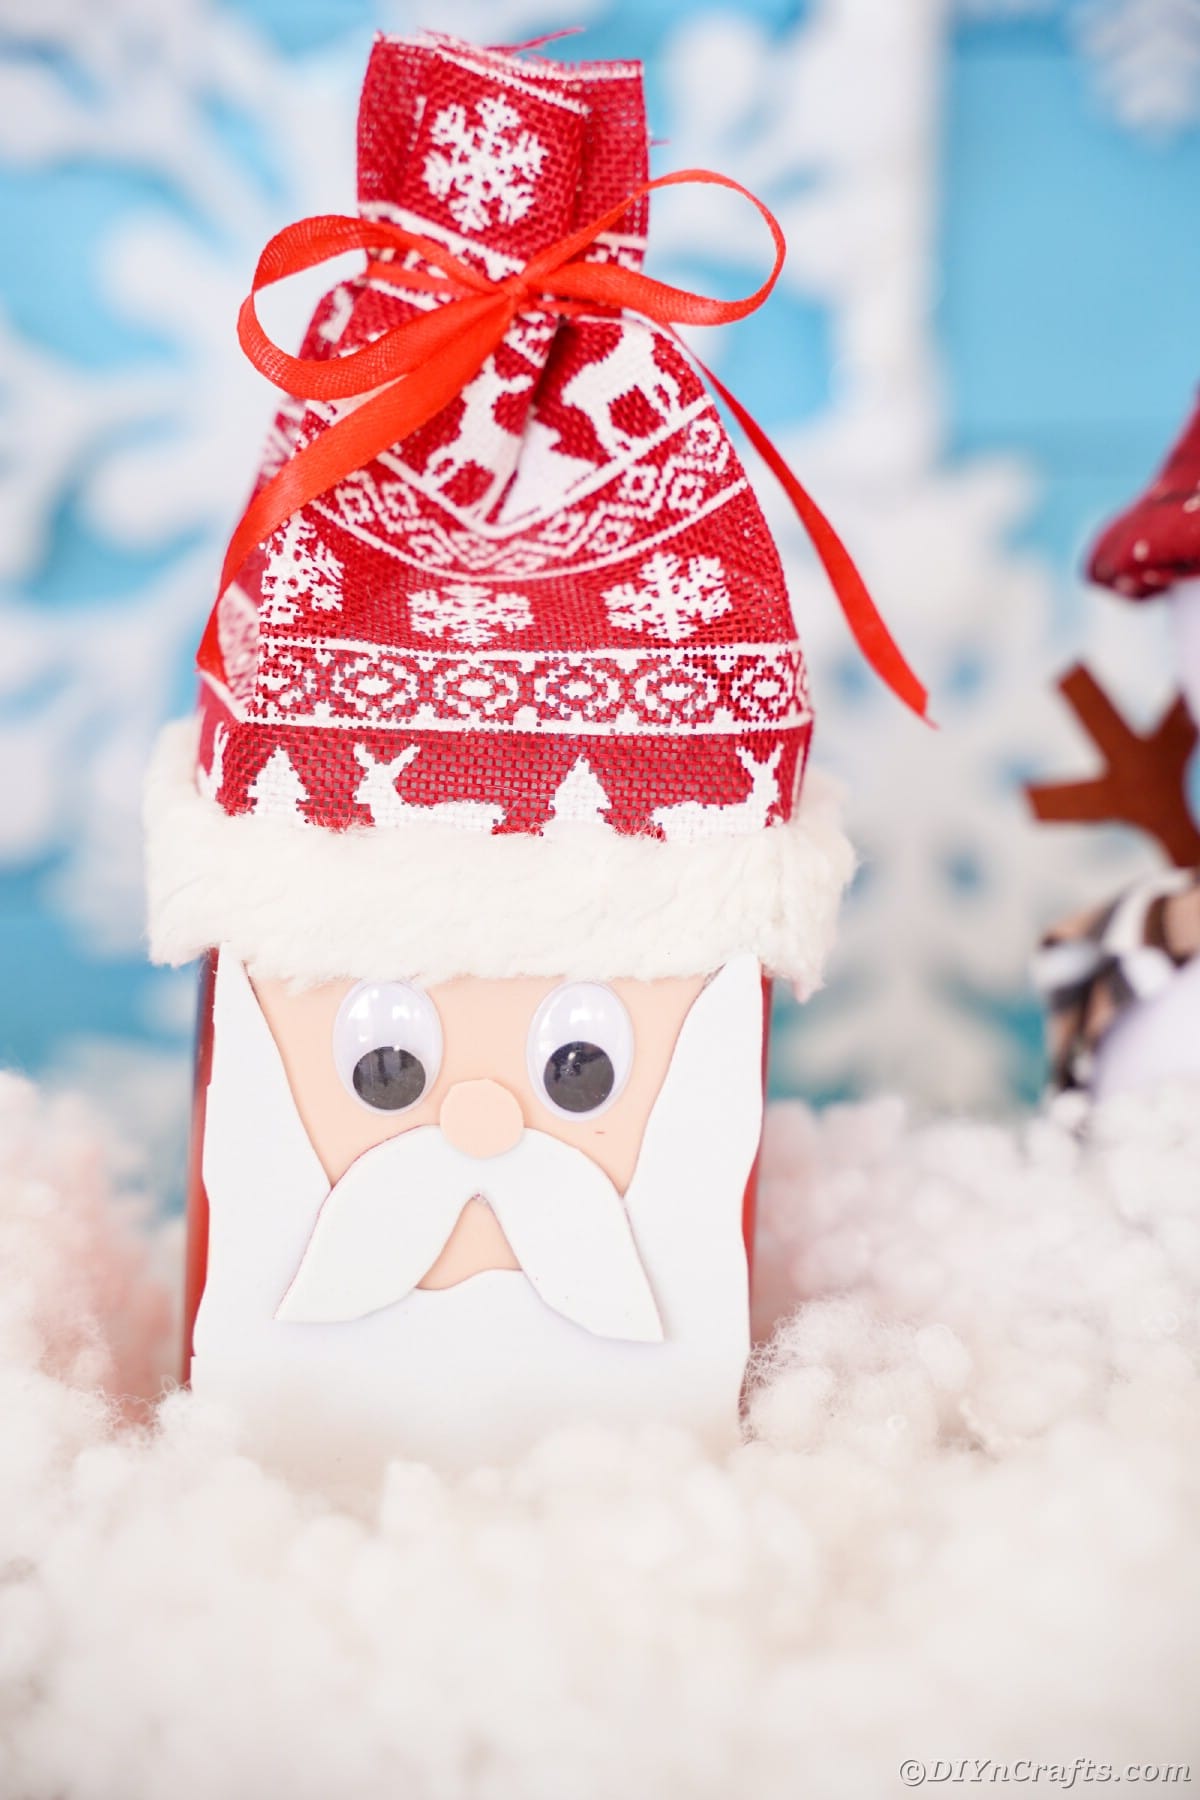 Božičkov obraz iz pene na škatli z nordijskim klobukom, ki sedi na lažnem snegu